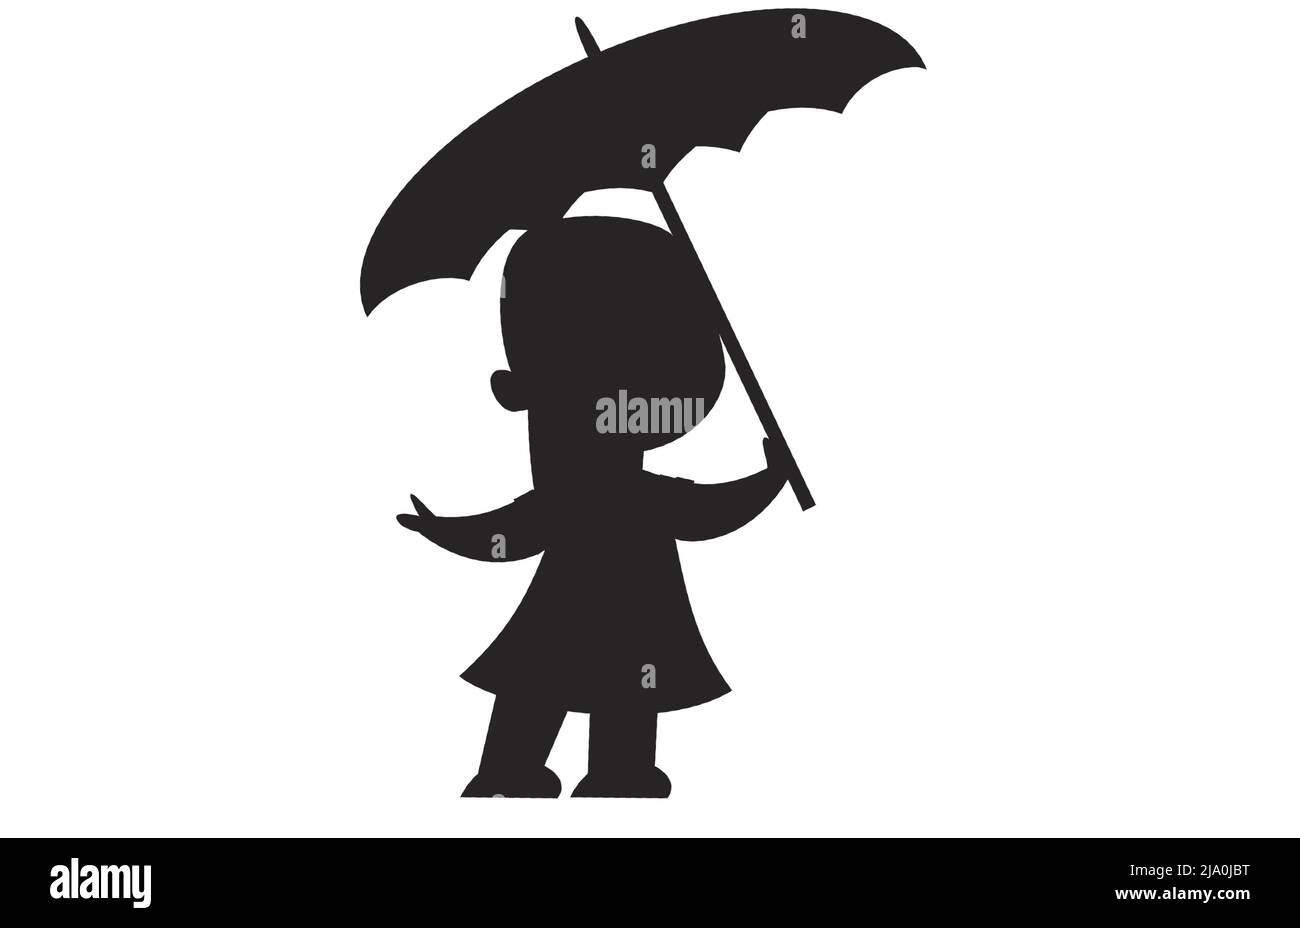 Schwarze Silhouette eines kleinen Mädchens, das mit einem Regenschirm bei Regen, Regen steht und draußen im Sturm nass wird Stock Vektor